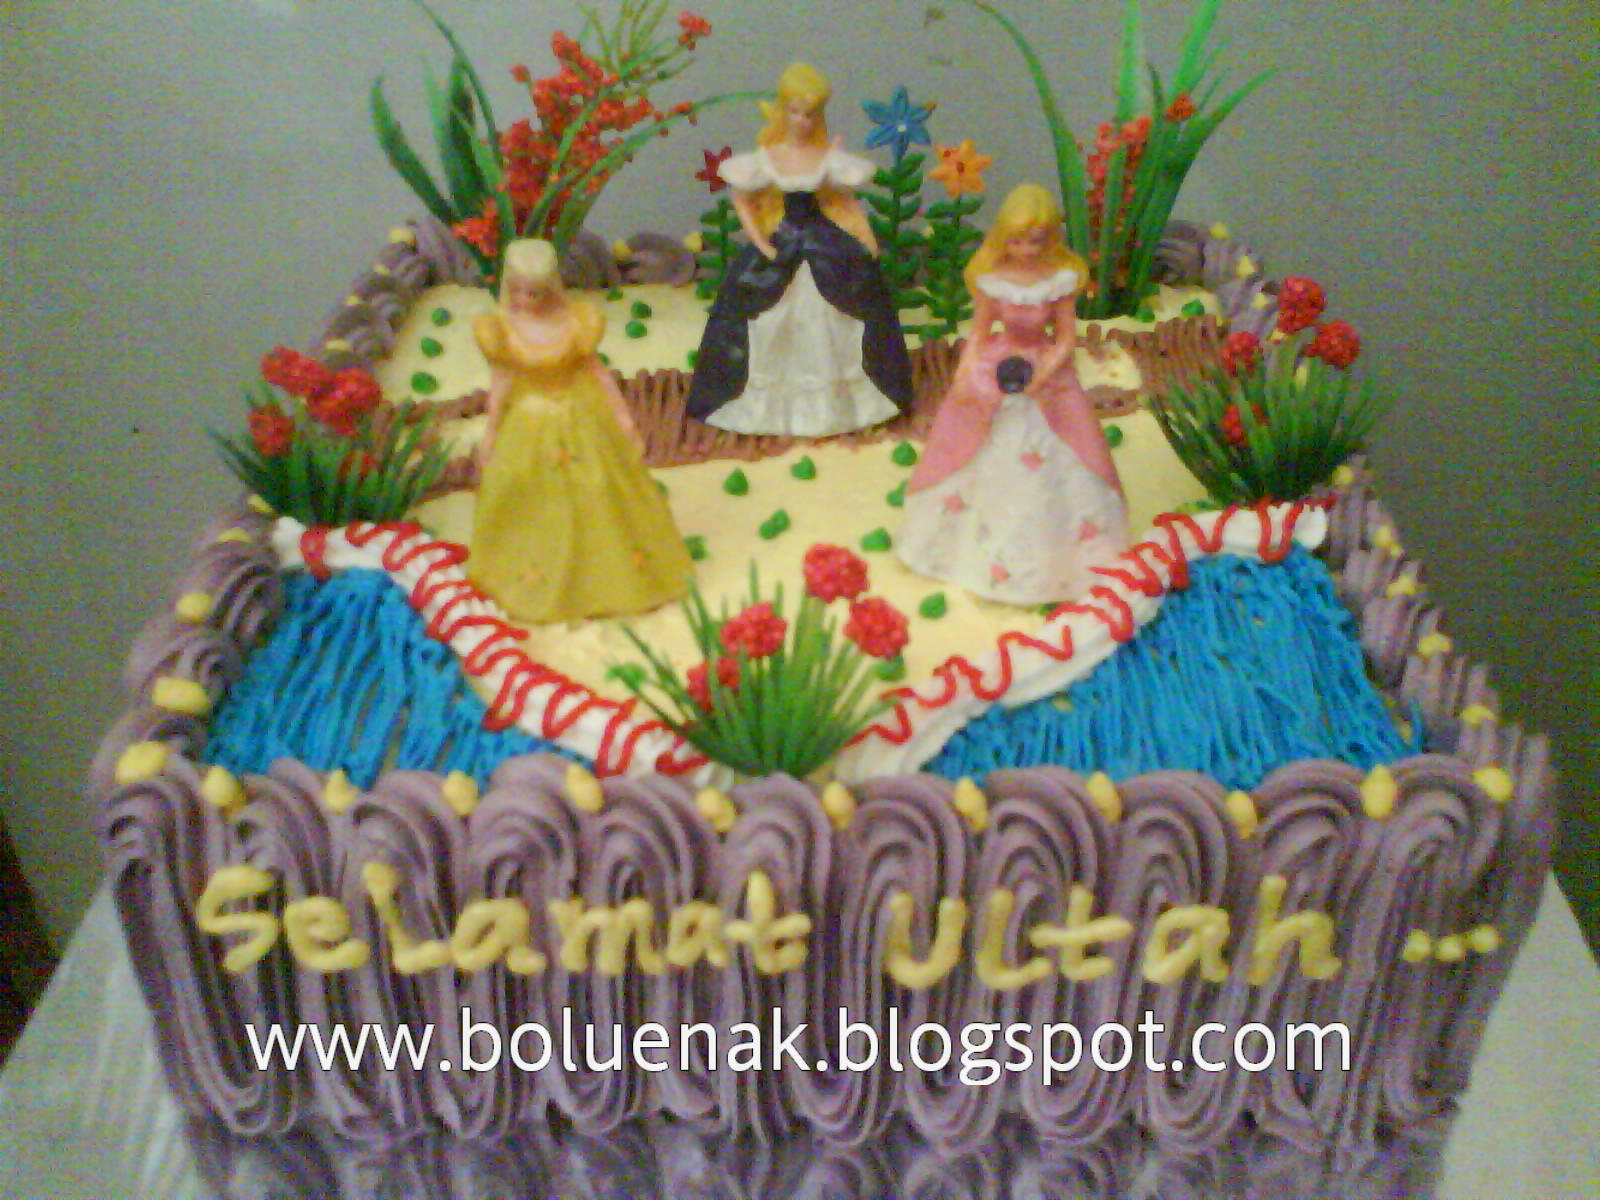 Toko Kue Bolu Enak: PRINCESS BIRTHDAY CAKE